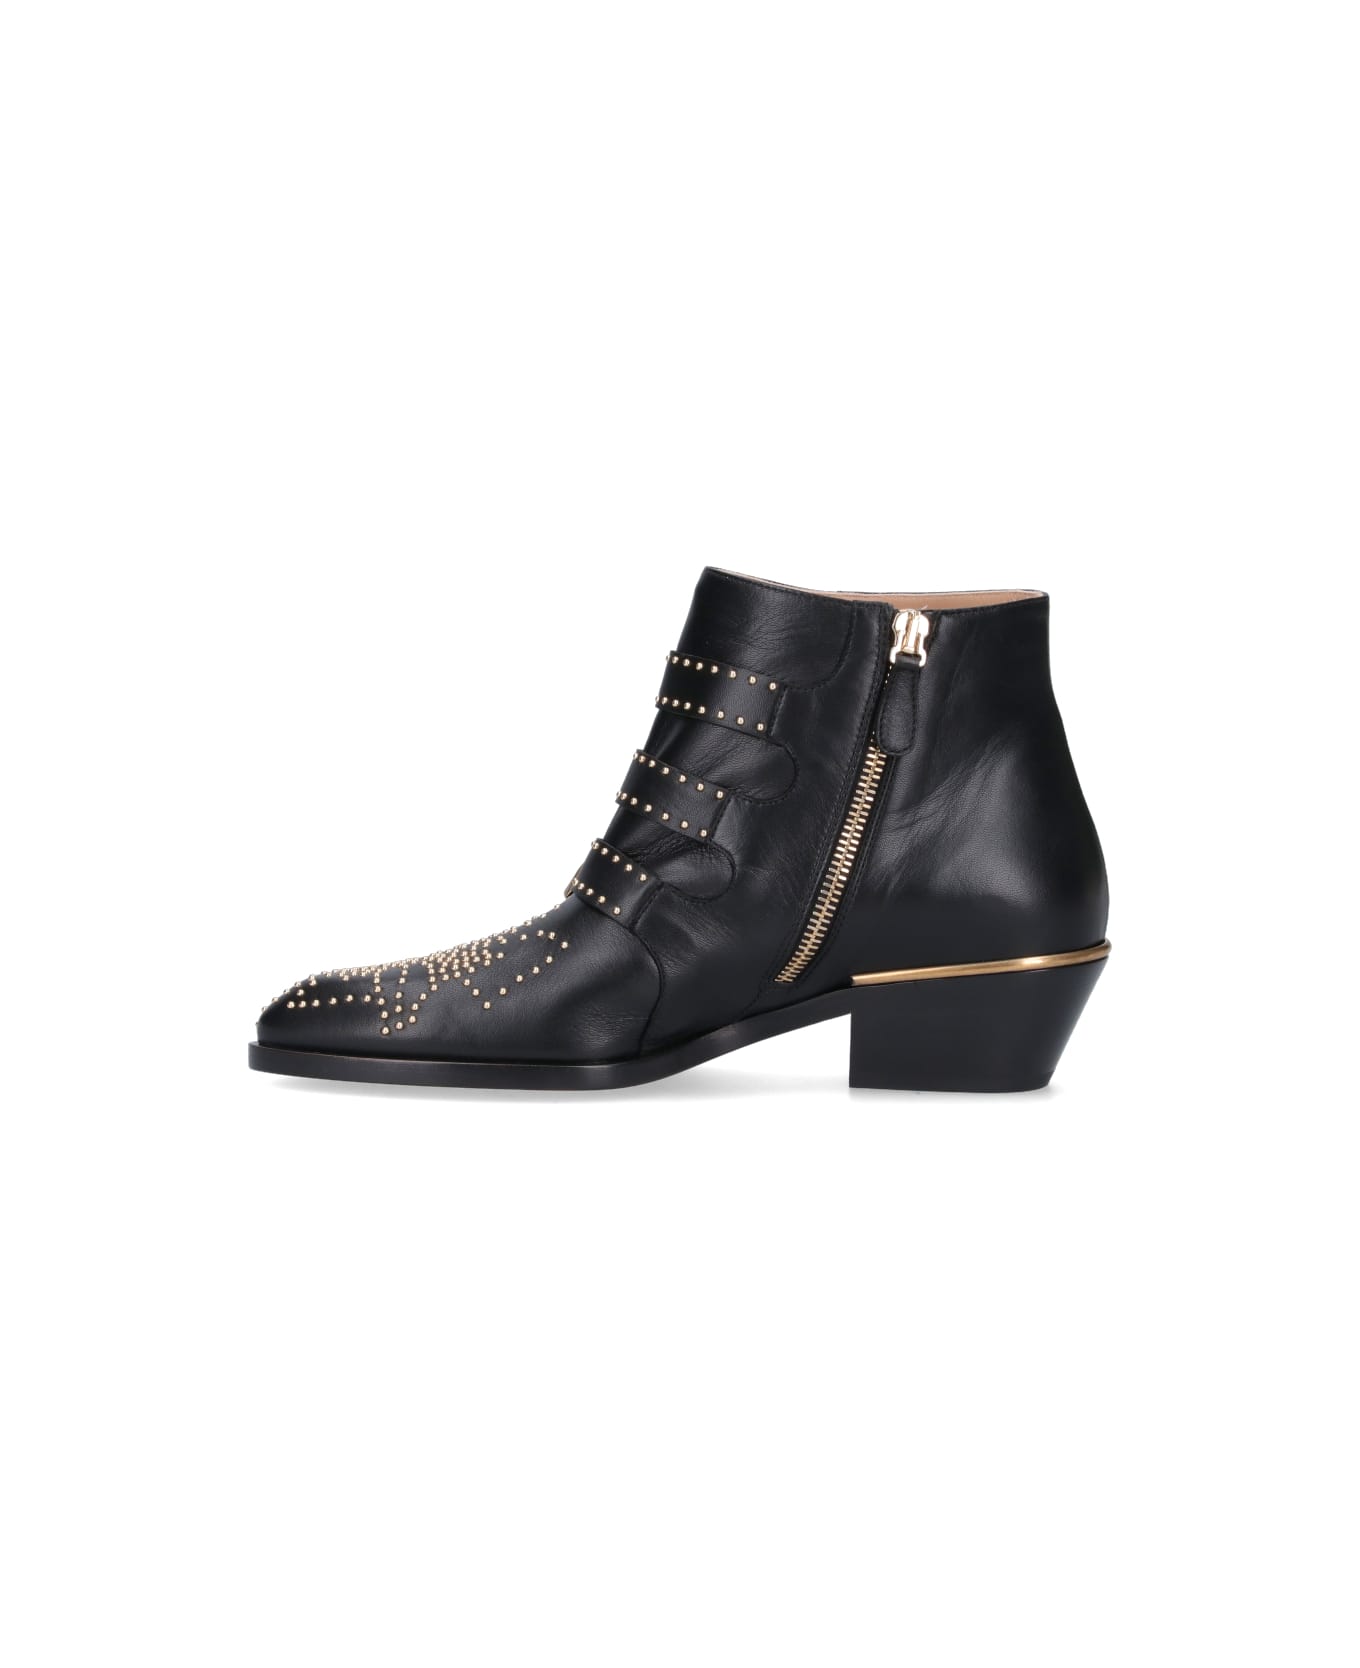 Chloé Susanna Embellished Buckled Boots - Black